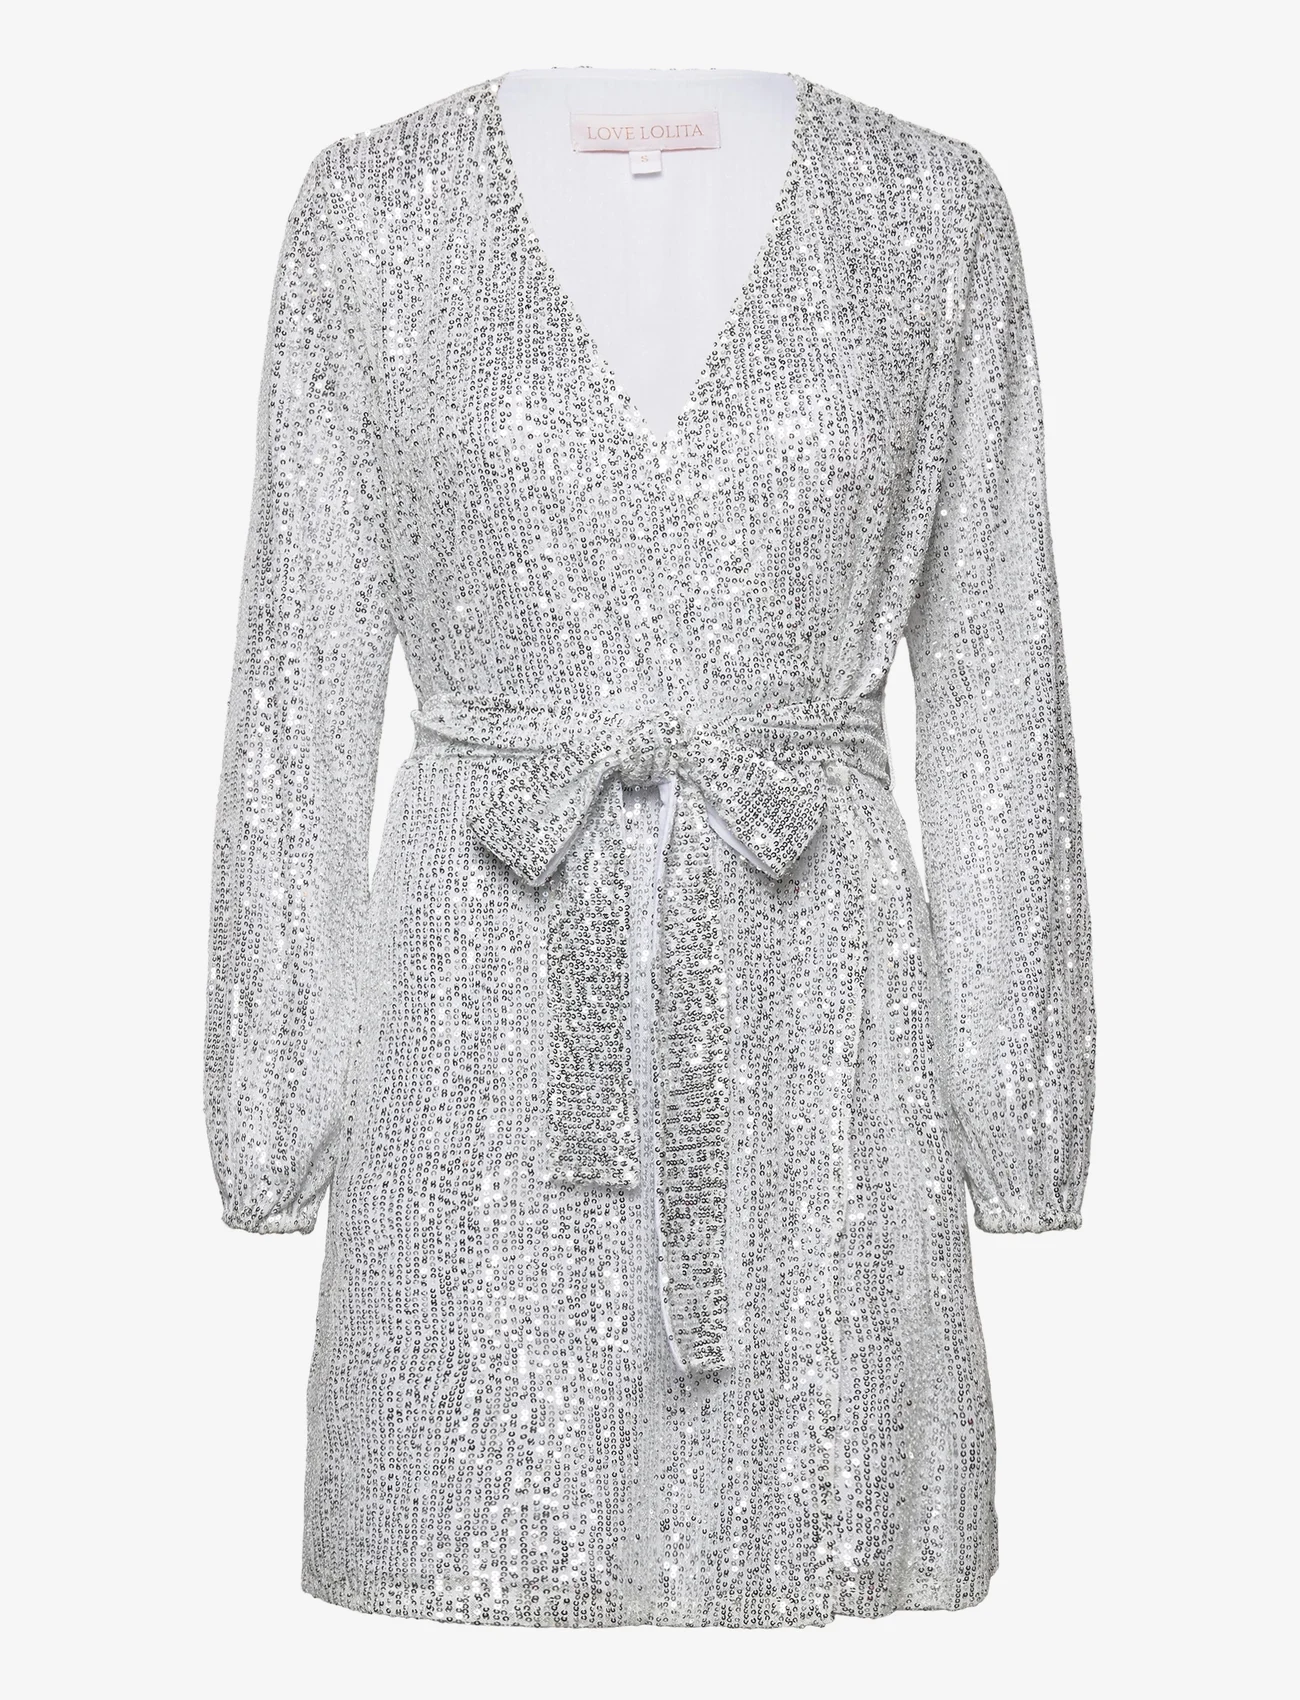 Love Lolita - Adeline mini dress - odzież imprezowa w cenach outletowych - silver sequins - 0